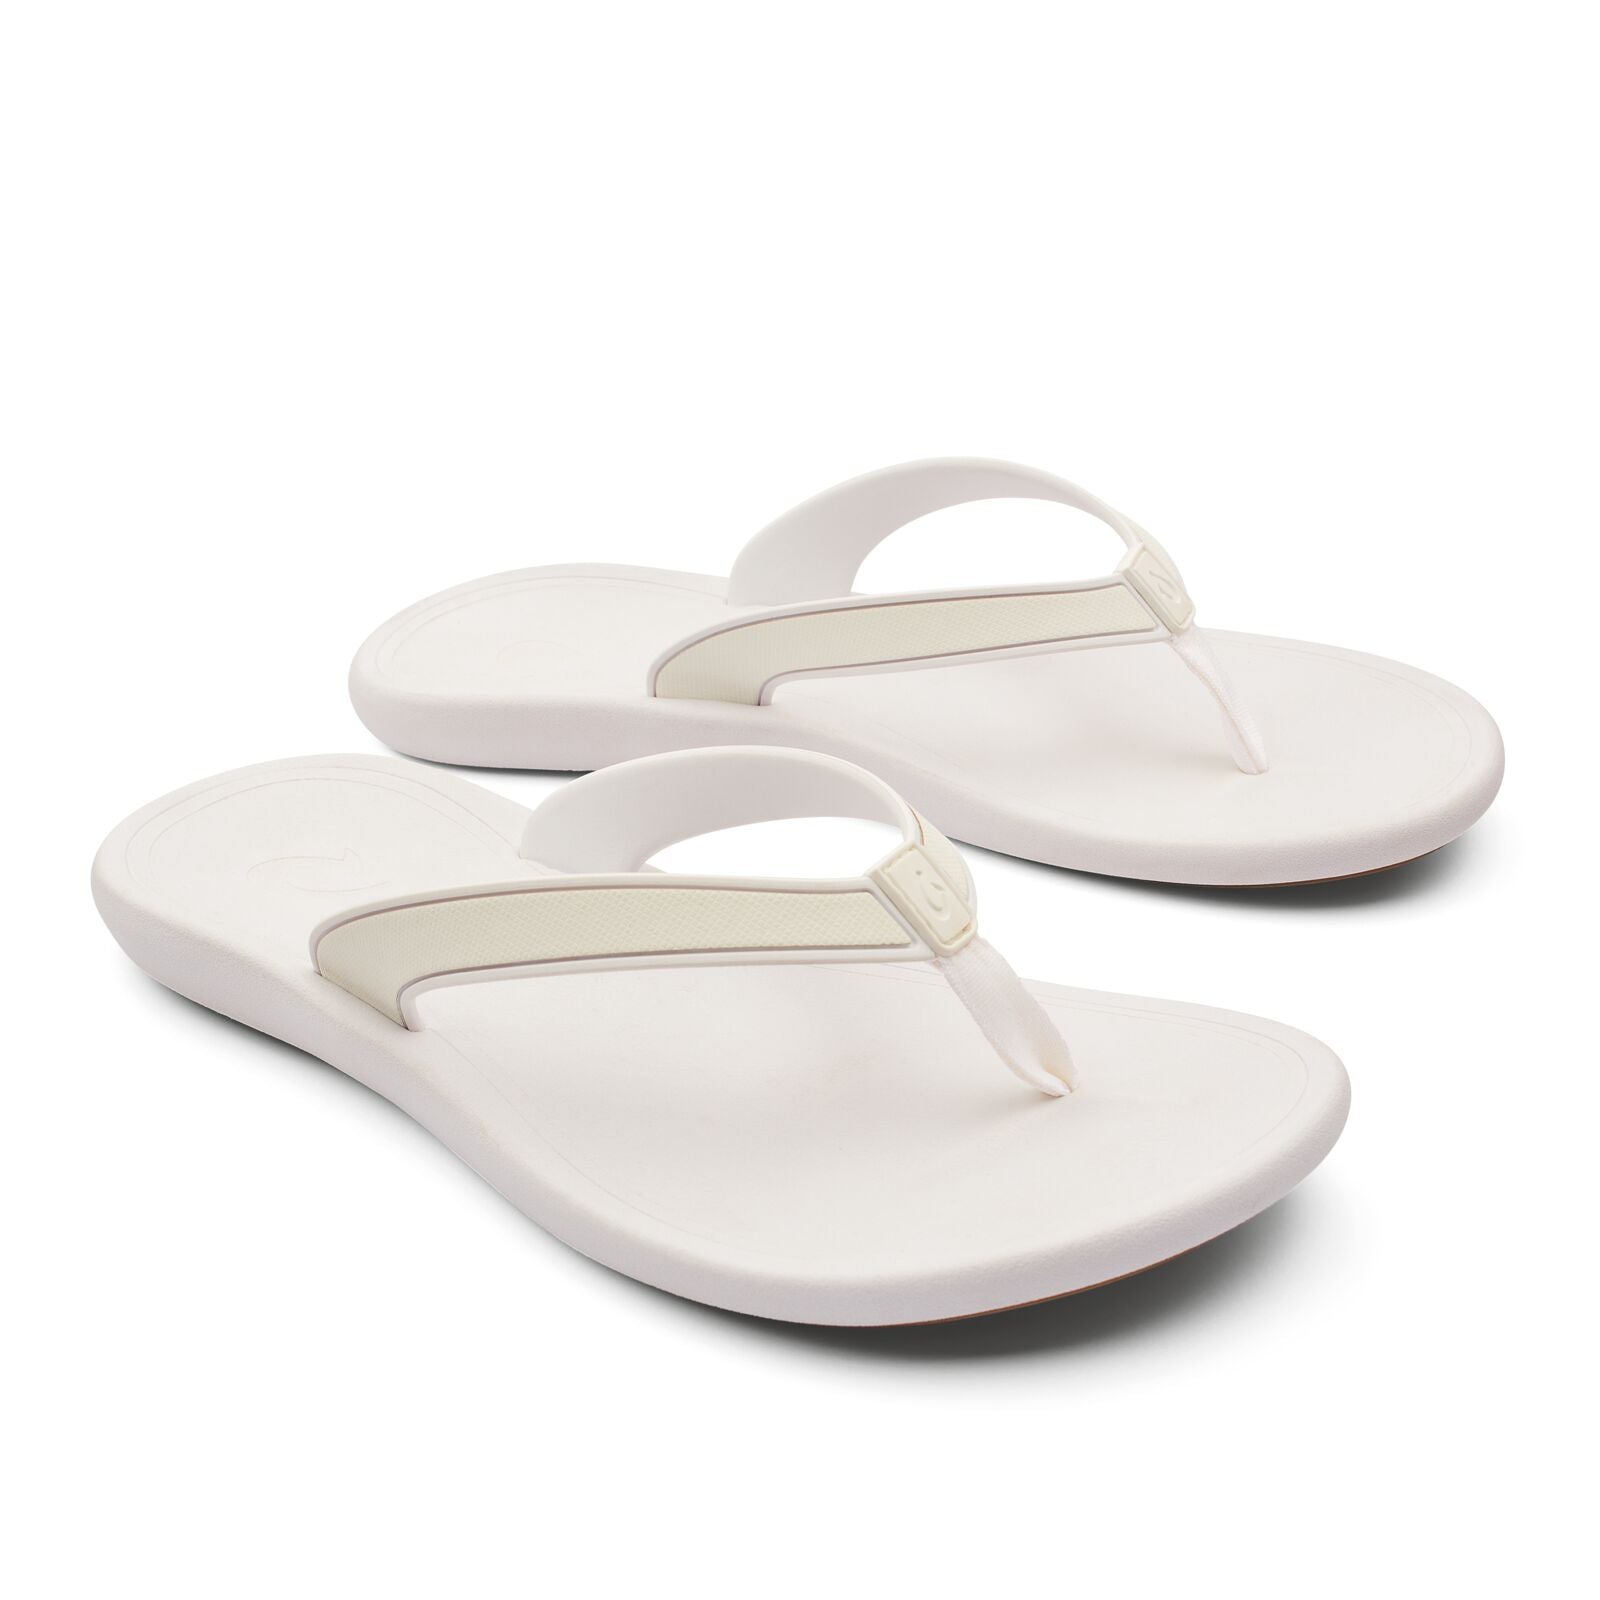 Olukai Kapehe Womens Sandal 4R4R-White-White 10